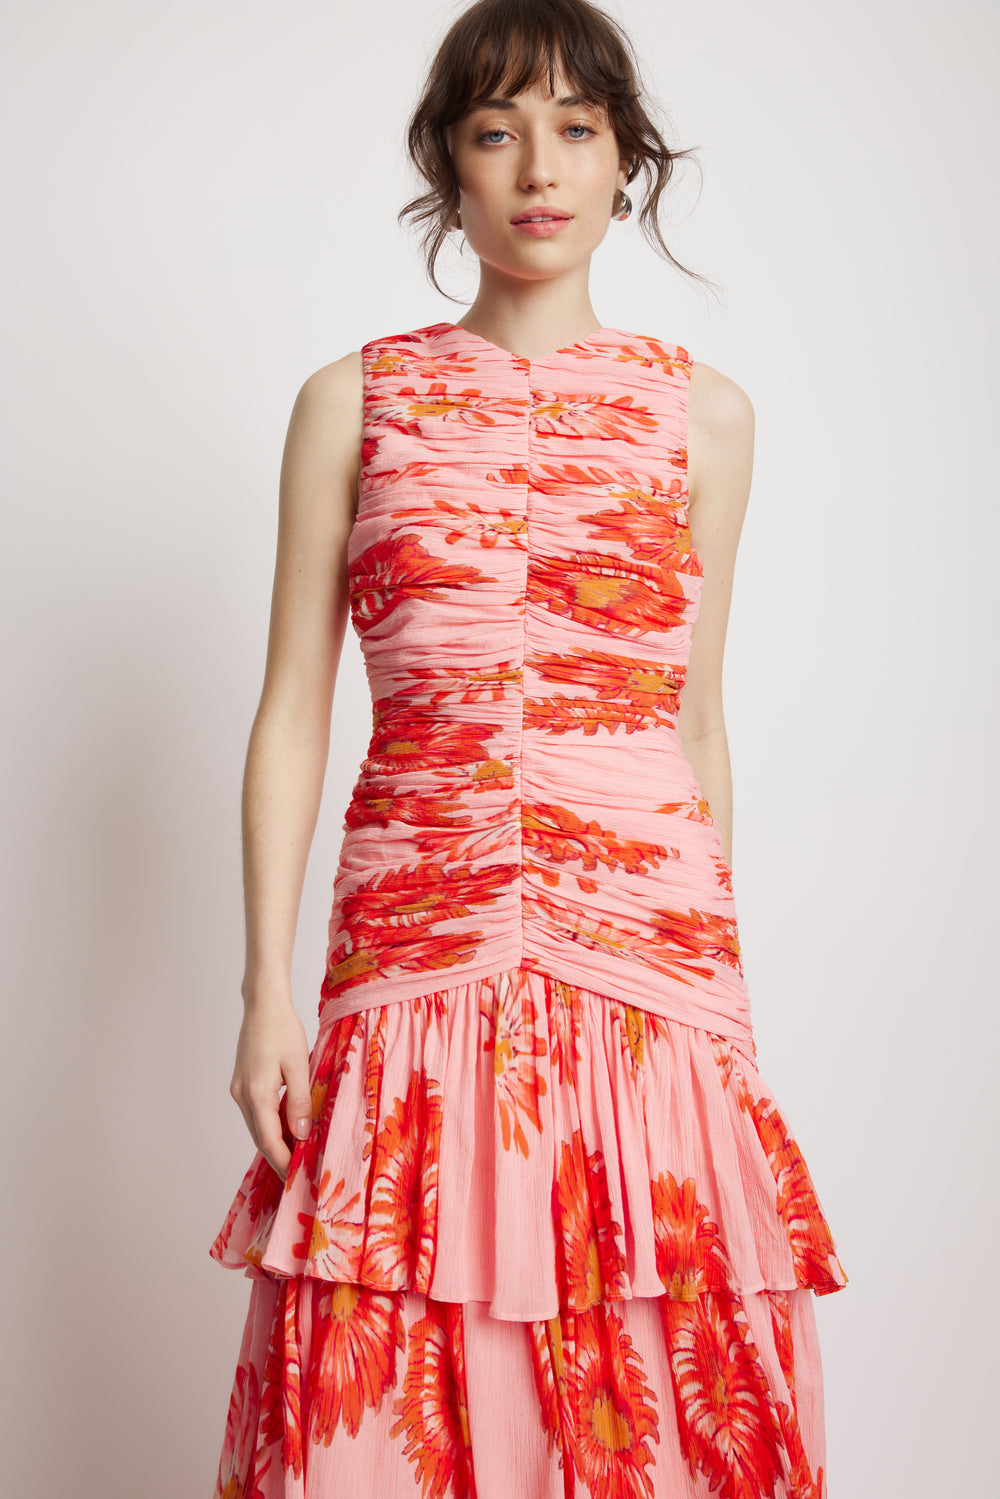 Wildflower Full Length Dress - Wildflower Print | Sunset Lover